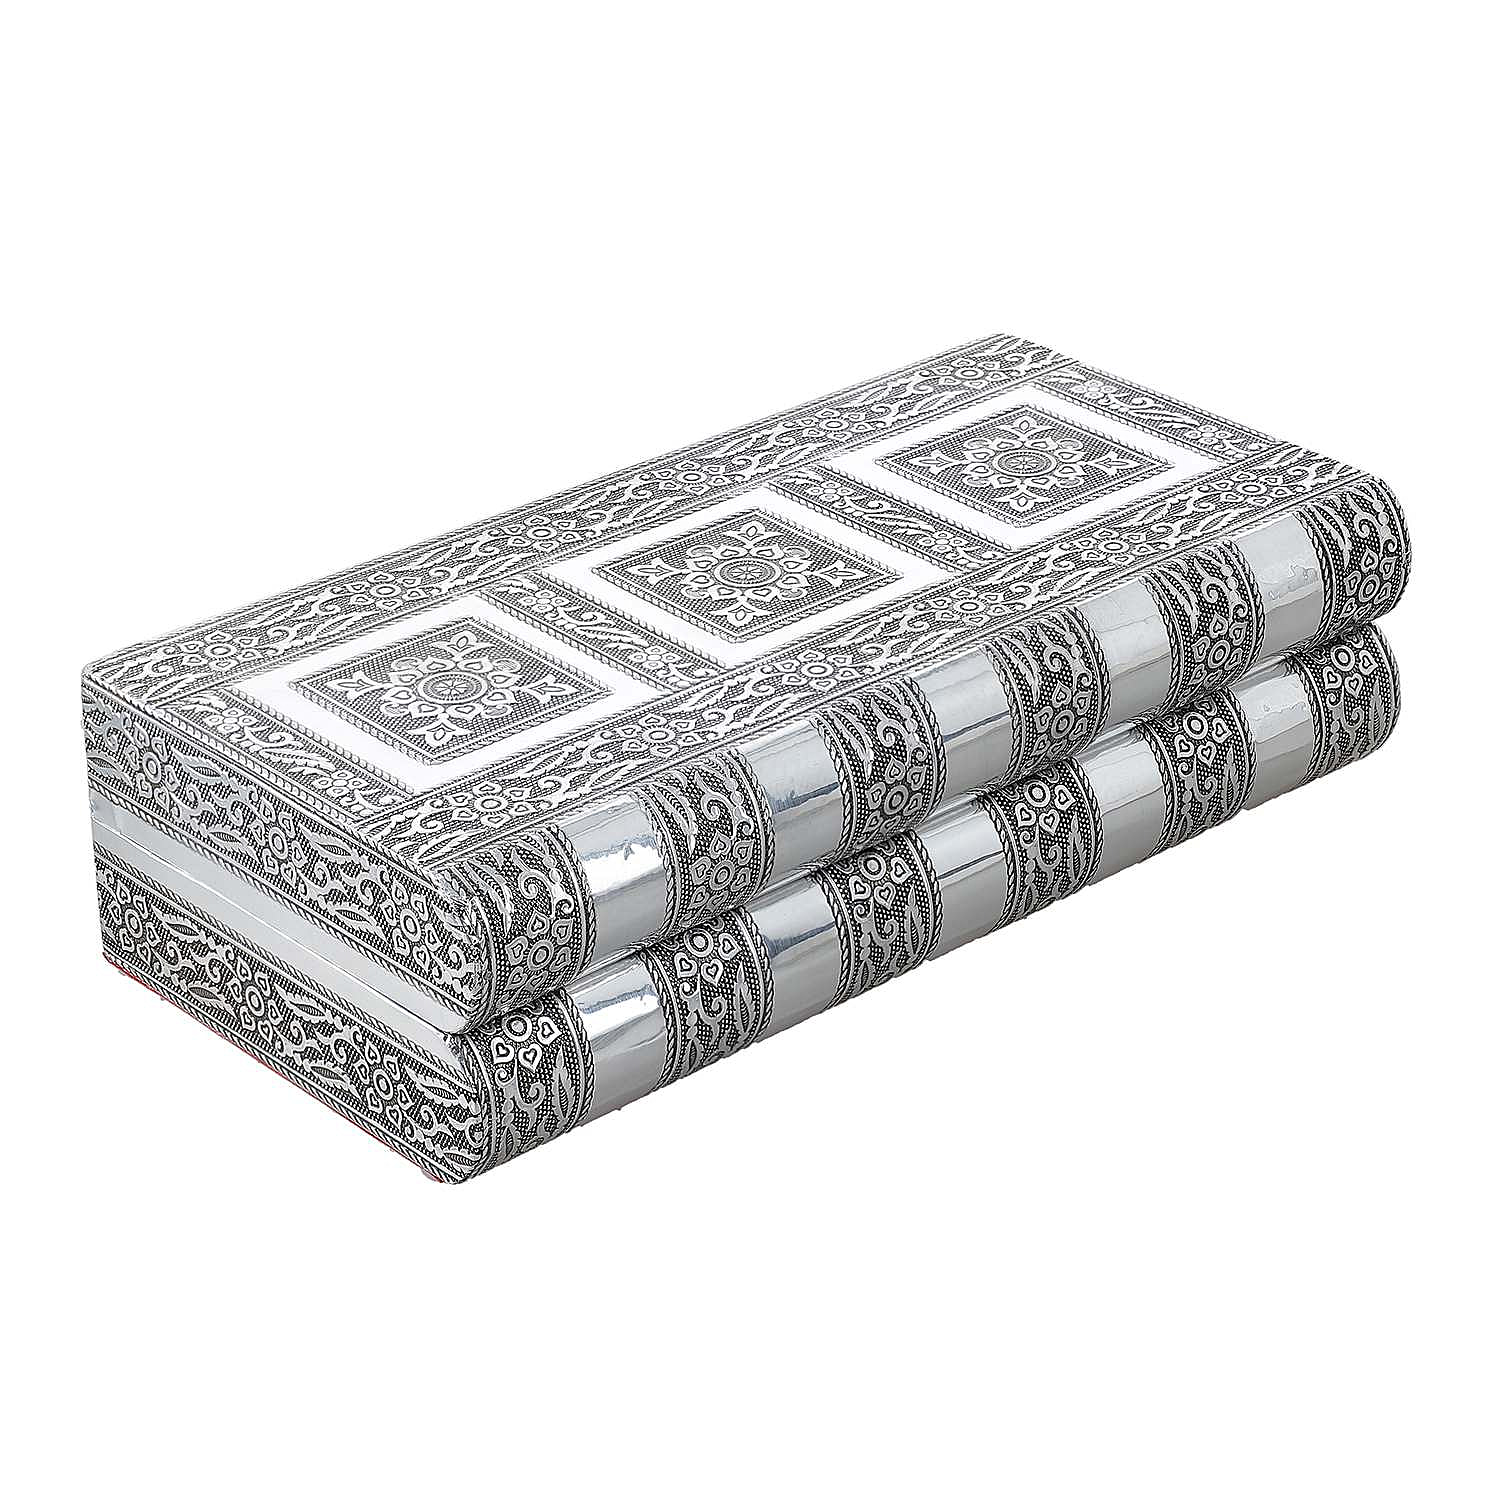 Handcrafted Oxidized Aluminium Storage-Jewelry Box with Mirror (Size 27x13x8 cm) - Silver